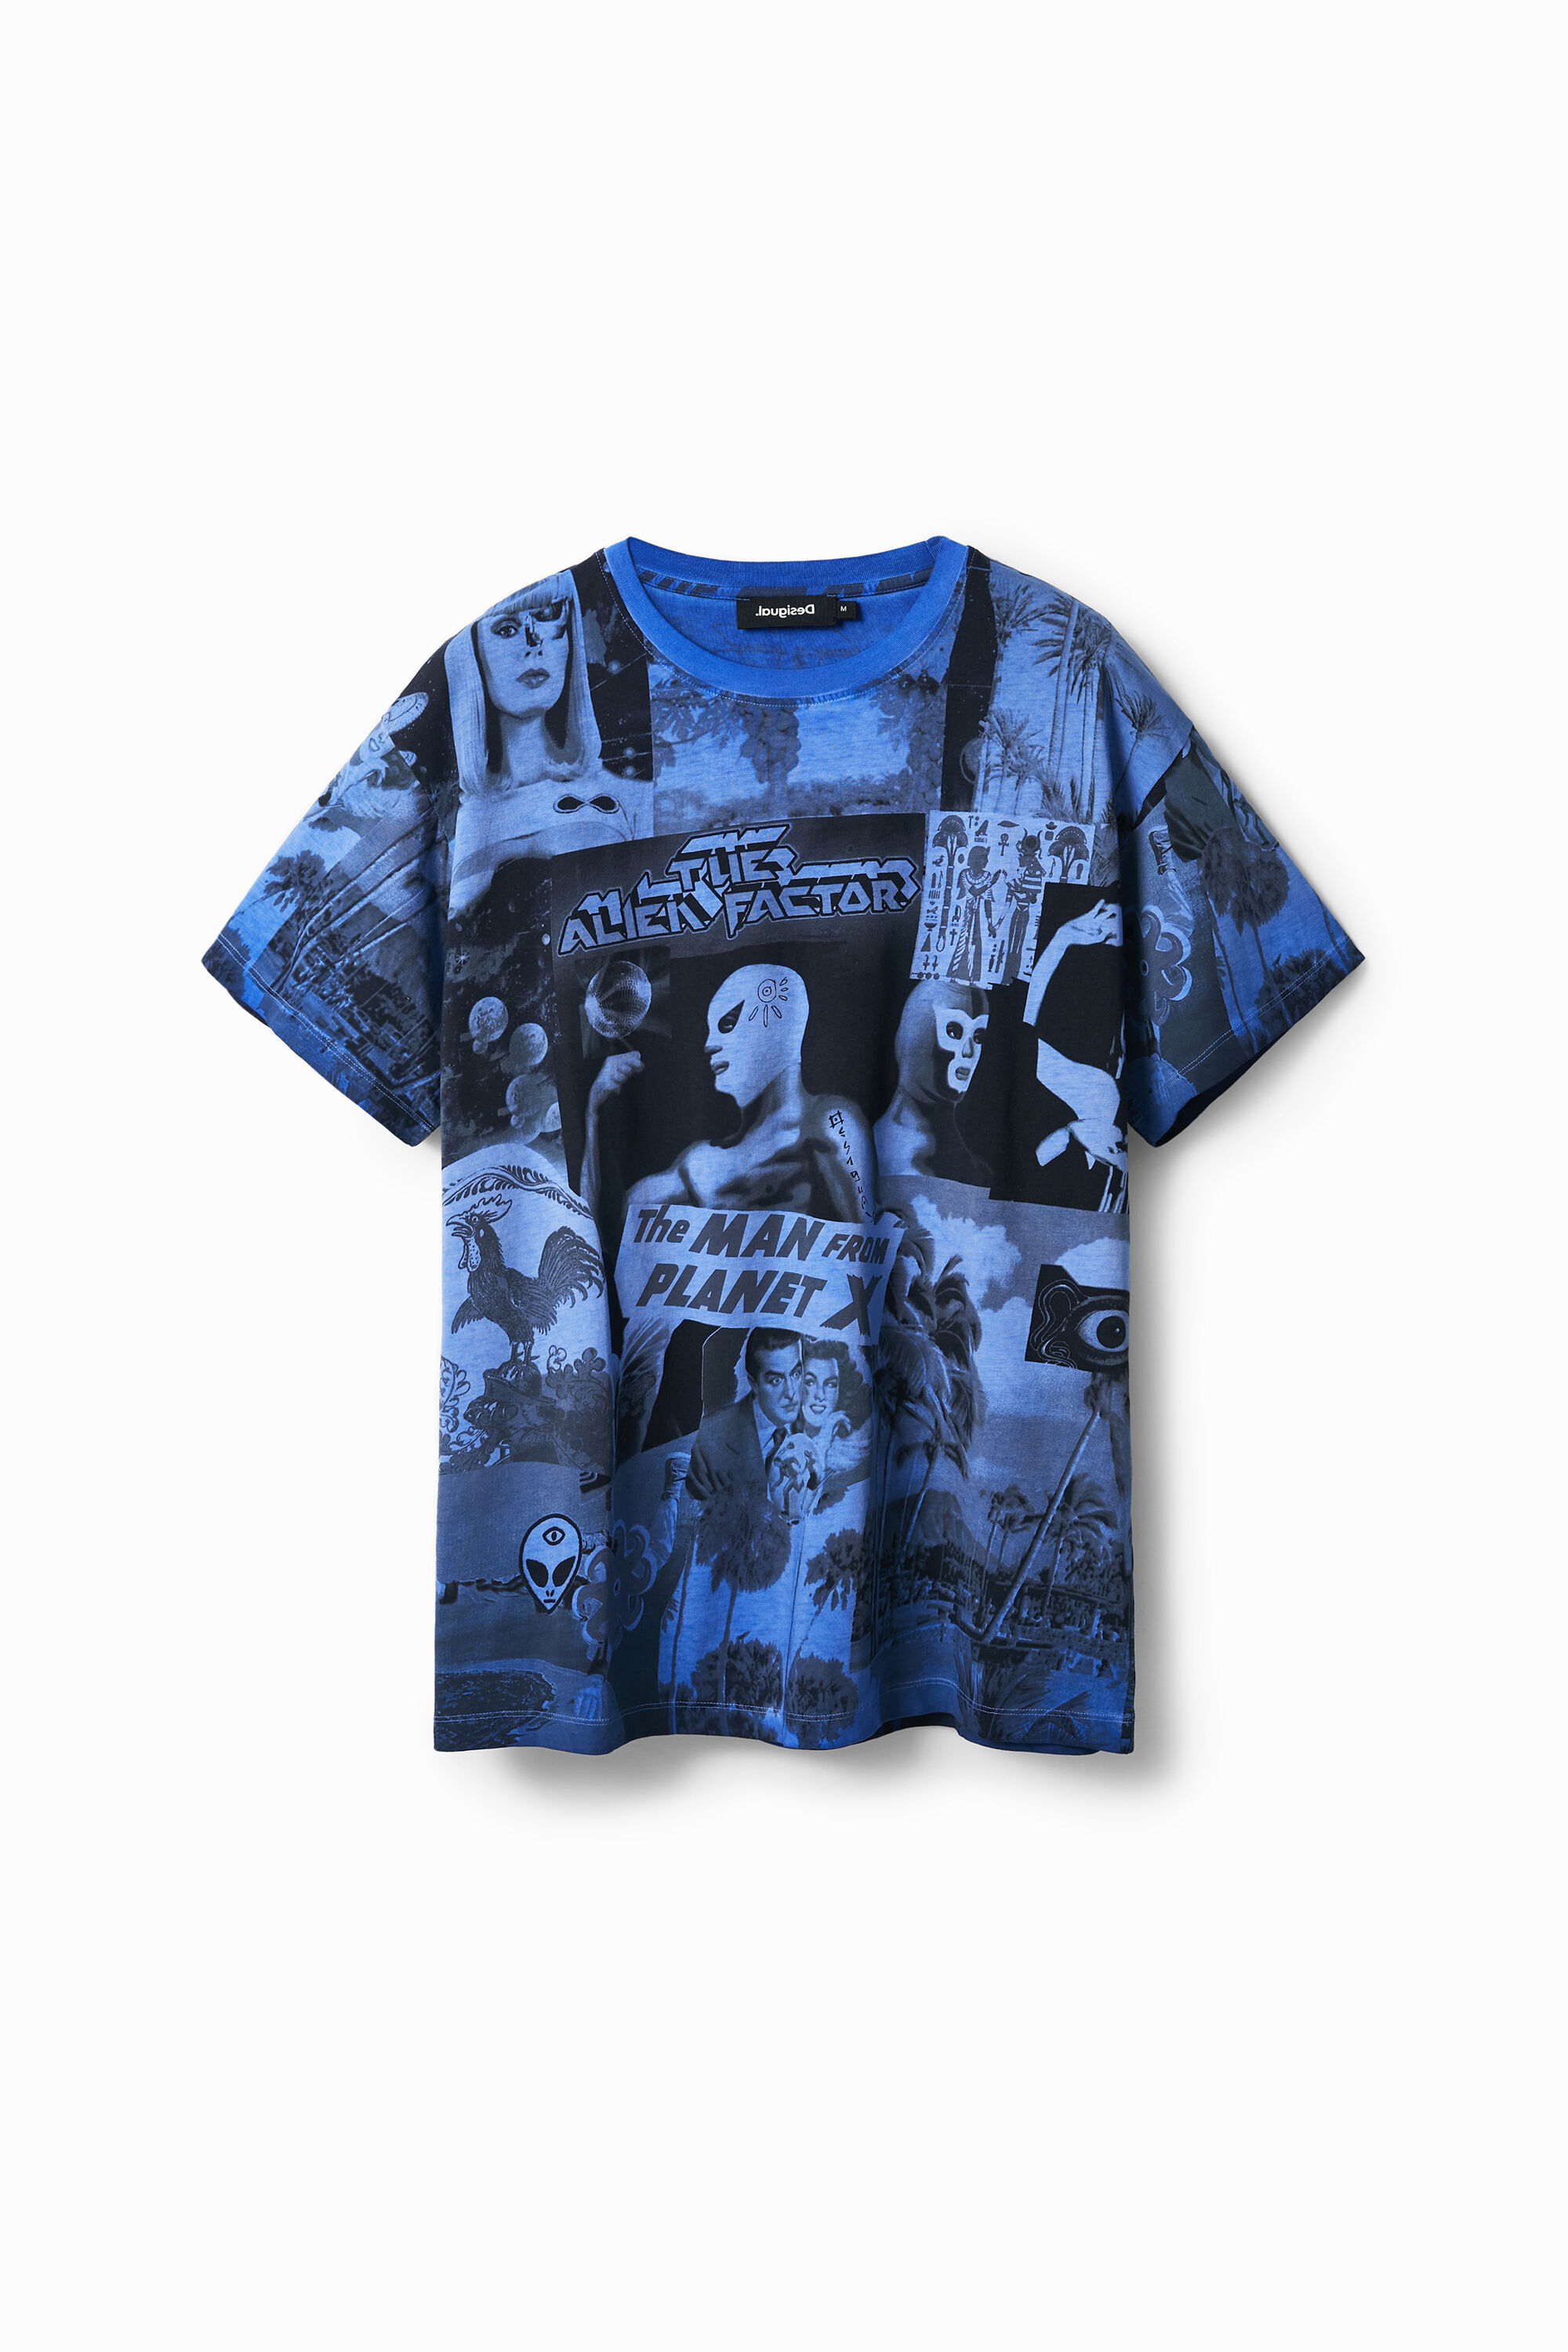 Alien collage T-shirt - BLUE - M